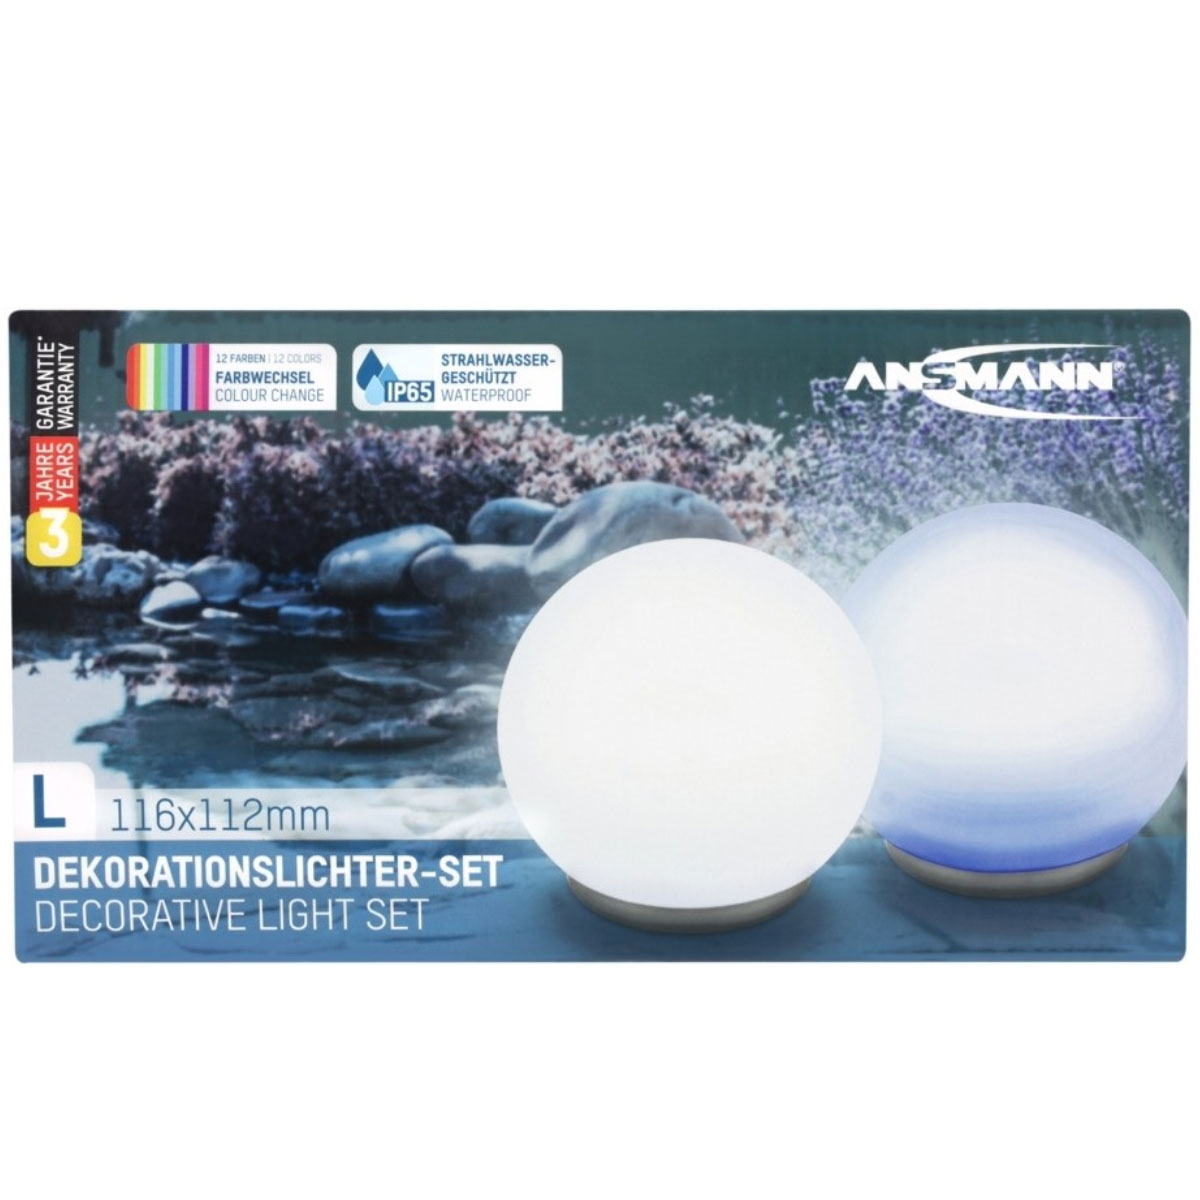 2 Stück ANSMANN Aqua Ball schwimmende LED-Wasserleuchten mit Farbfunktionen, inklusive 3 AAA Micro Batterien und Fernbedienung